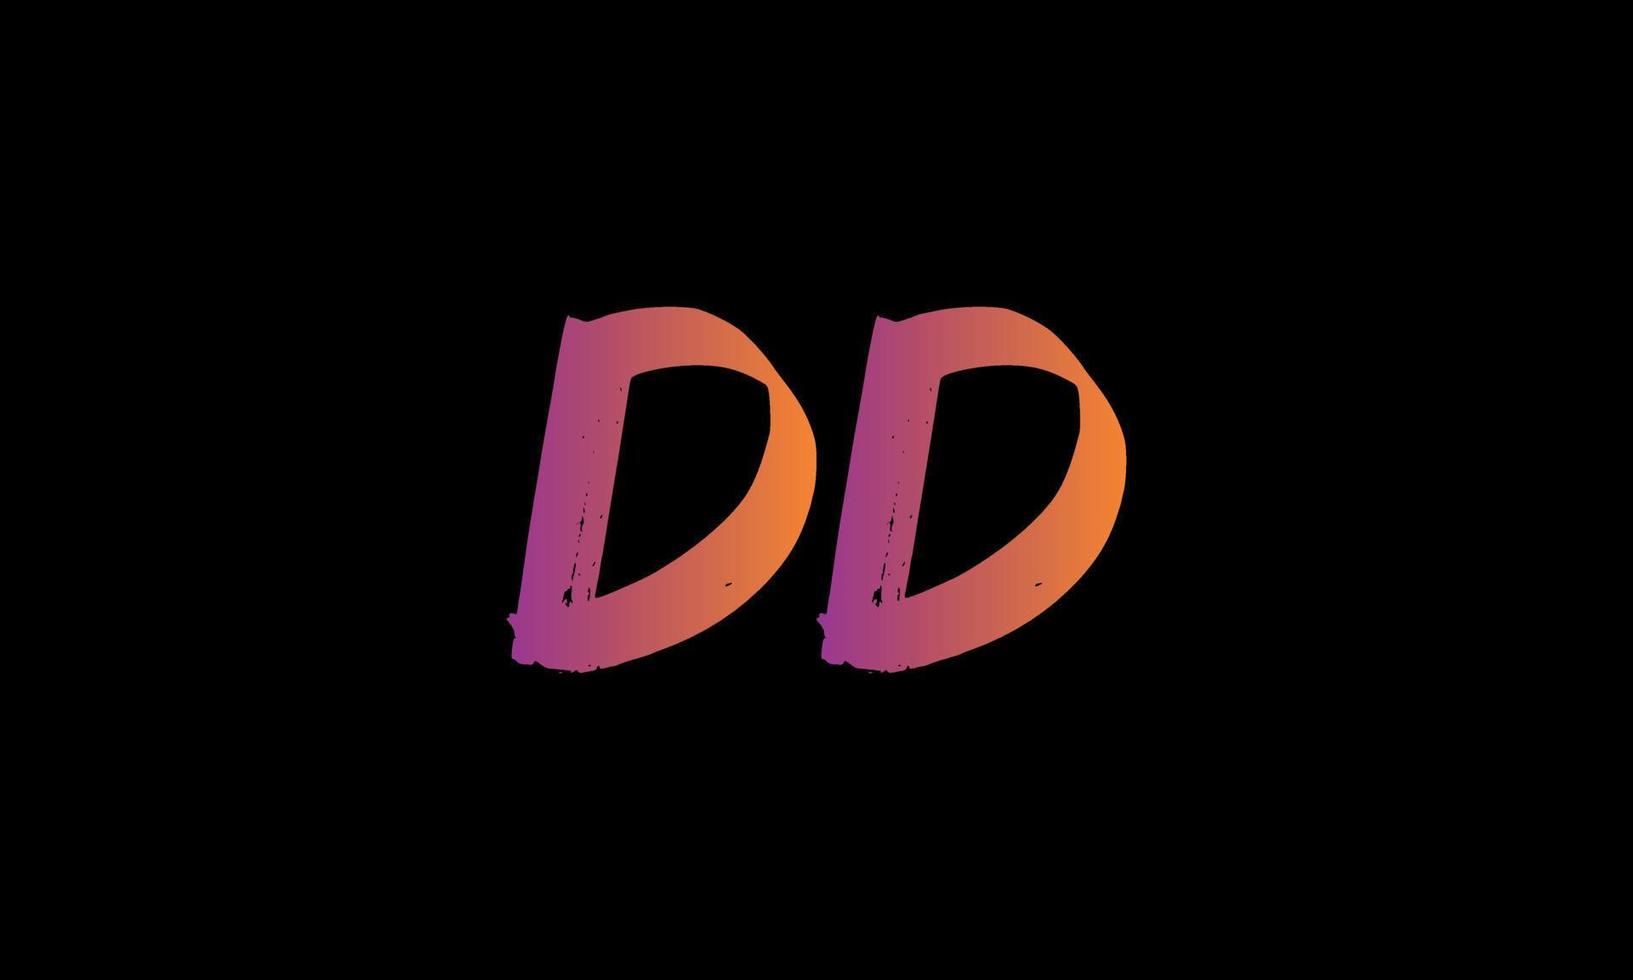 logotipo inicial de la letra dd. plantilla de vector libre de diseño de logotipo de carta stock cepillo dd.